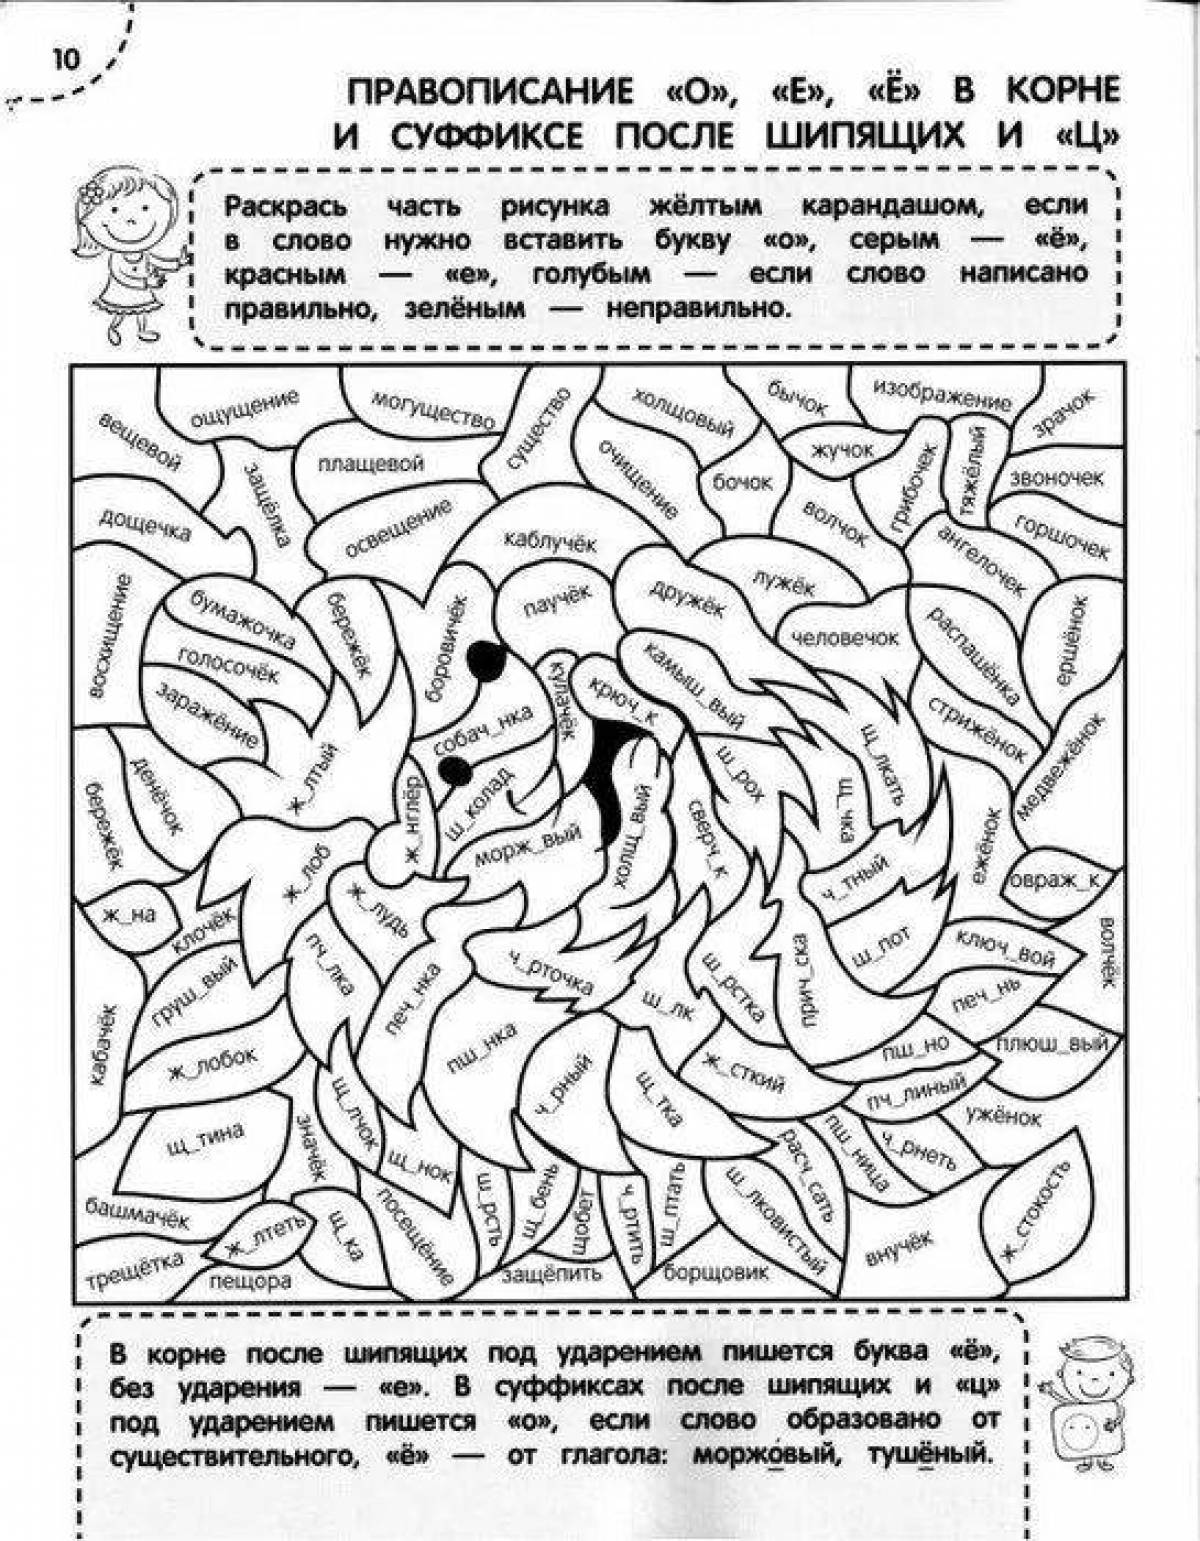 Delightful Russian coloring book for 6th grade